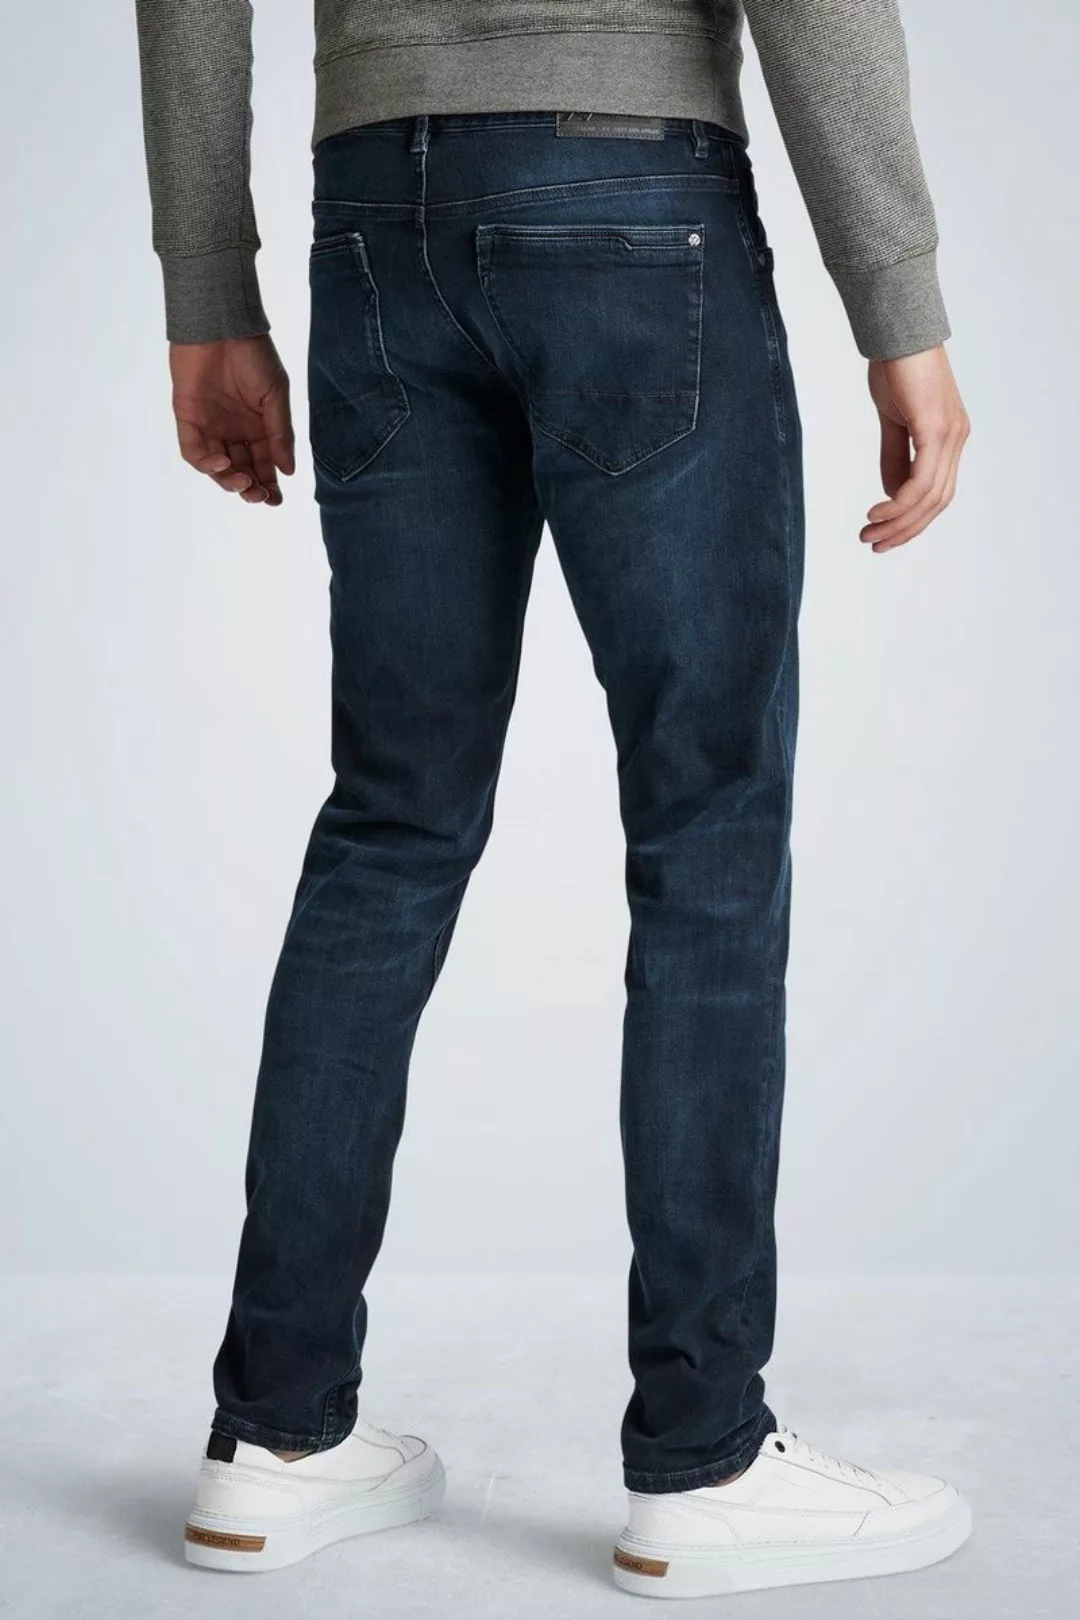 PME Legend XV Jeans Blue Black PTR150 - Größe W 38 - L 34 günstig online kaufen